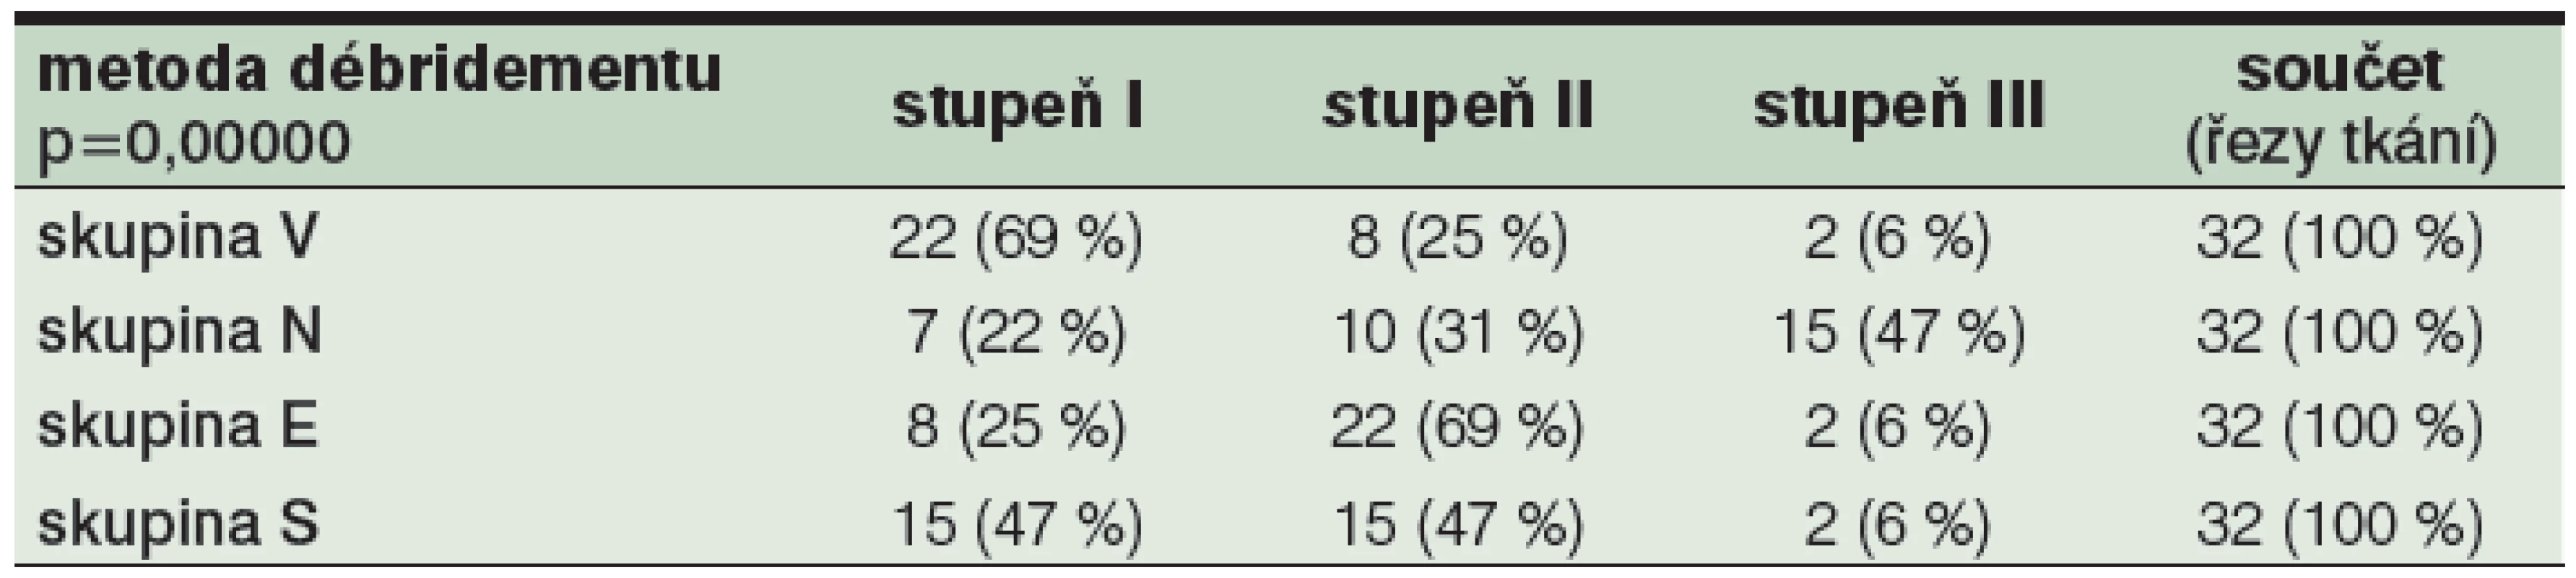 Vyjádření rozložení stupňů TDD v jednotlivých skupinách débridementu V, N, E a S<sup>1</sup>